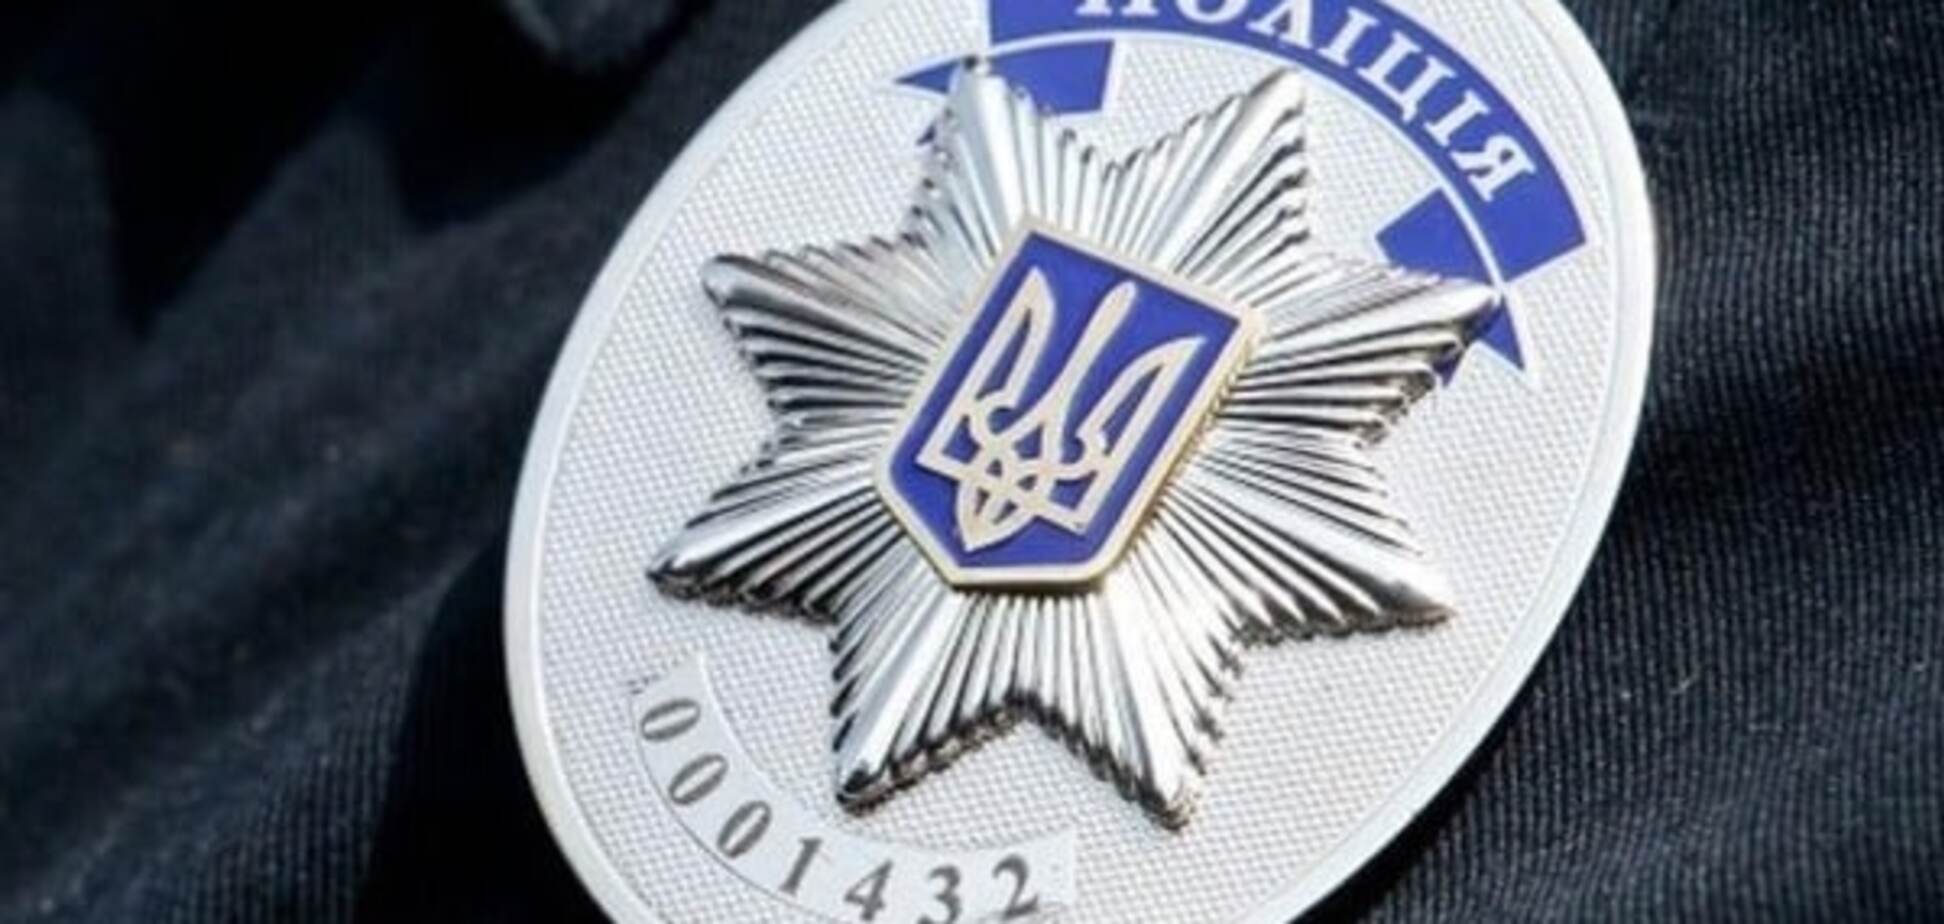 Подробиці нападу на сім'ю бійця АТО в Києві: бандити зробили помилку